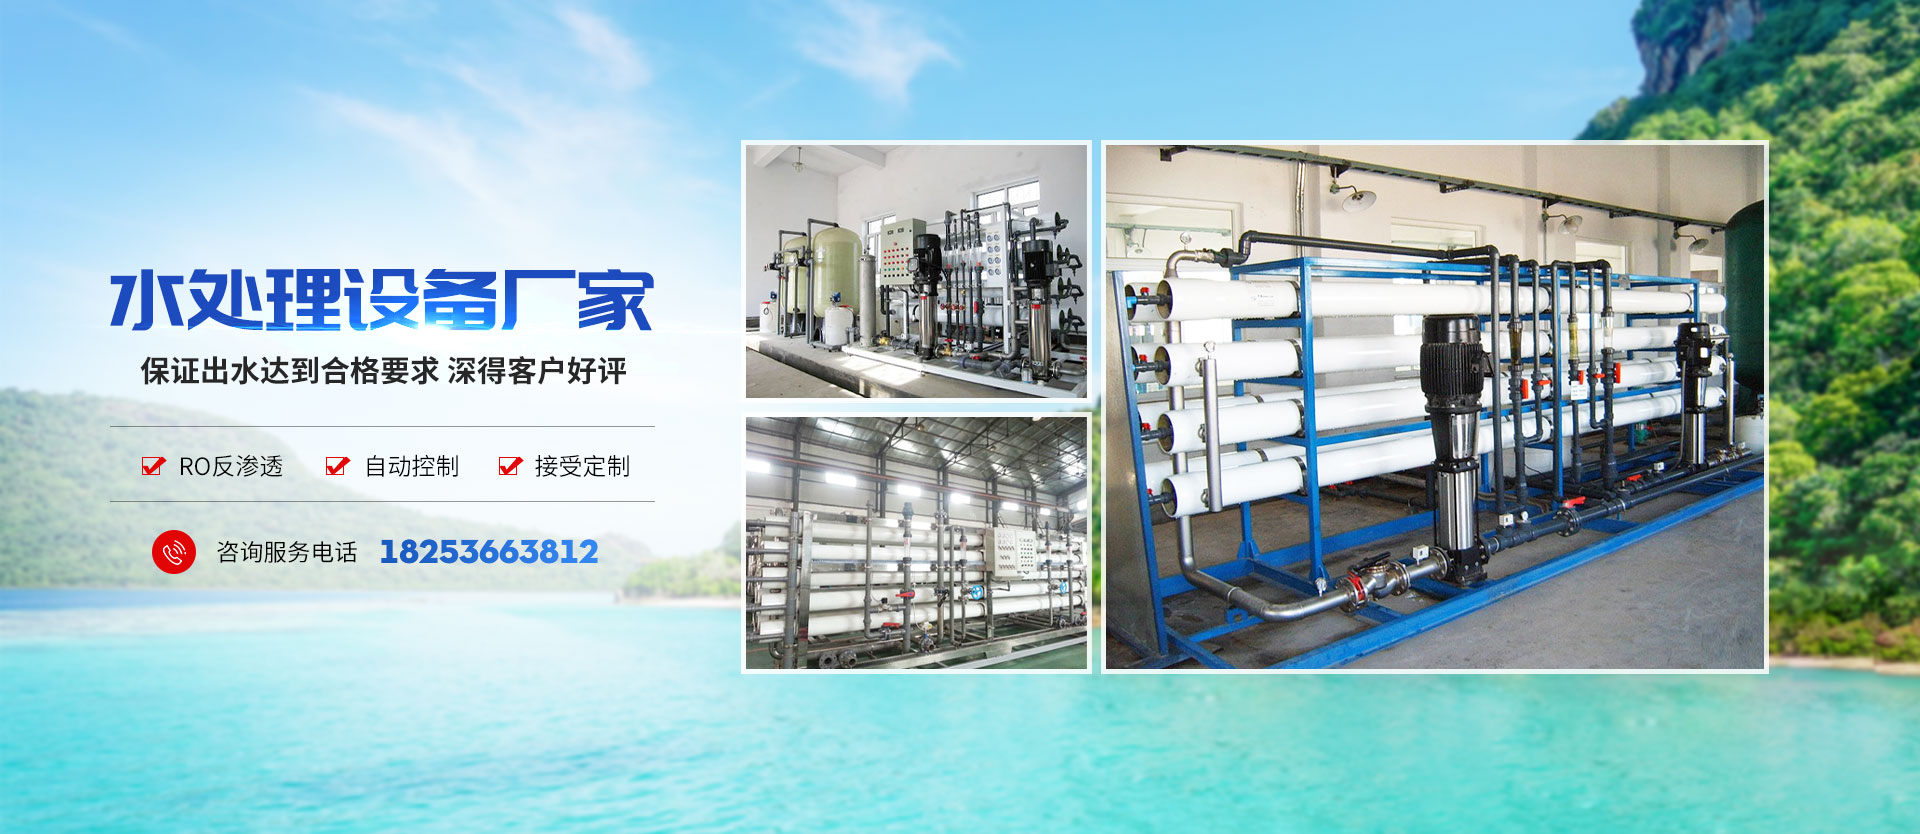 青州市同泰水处理设备有限公司